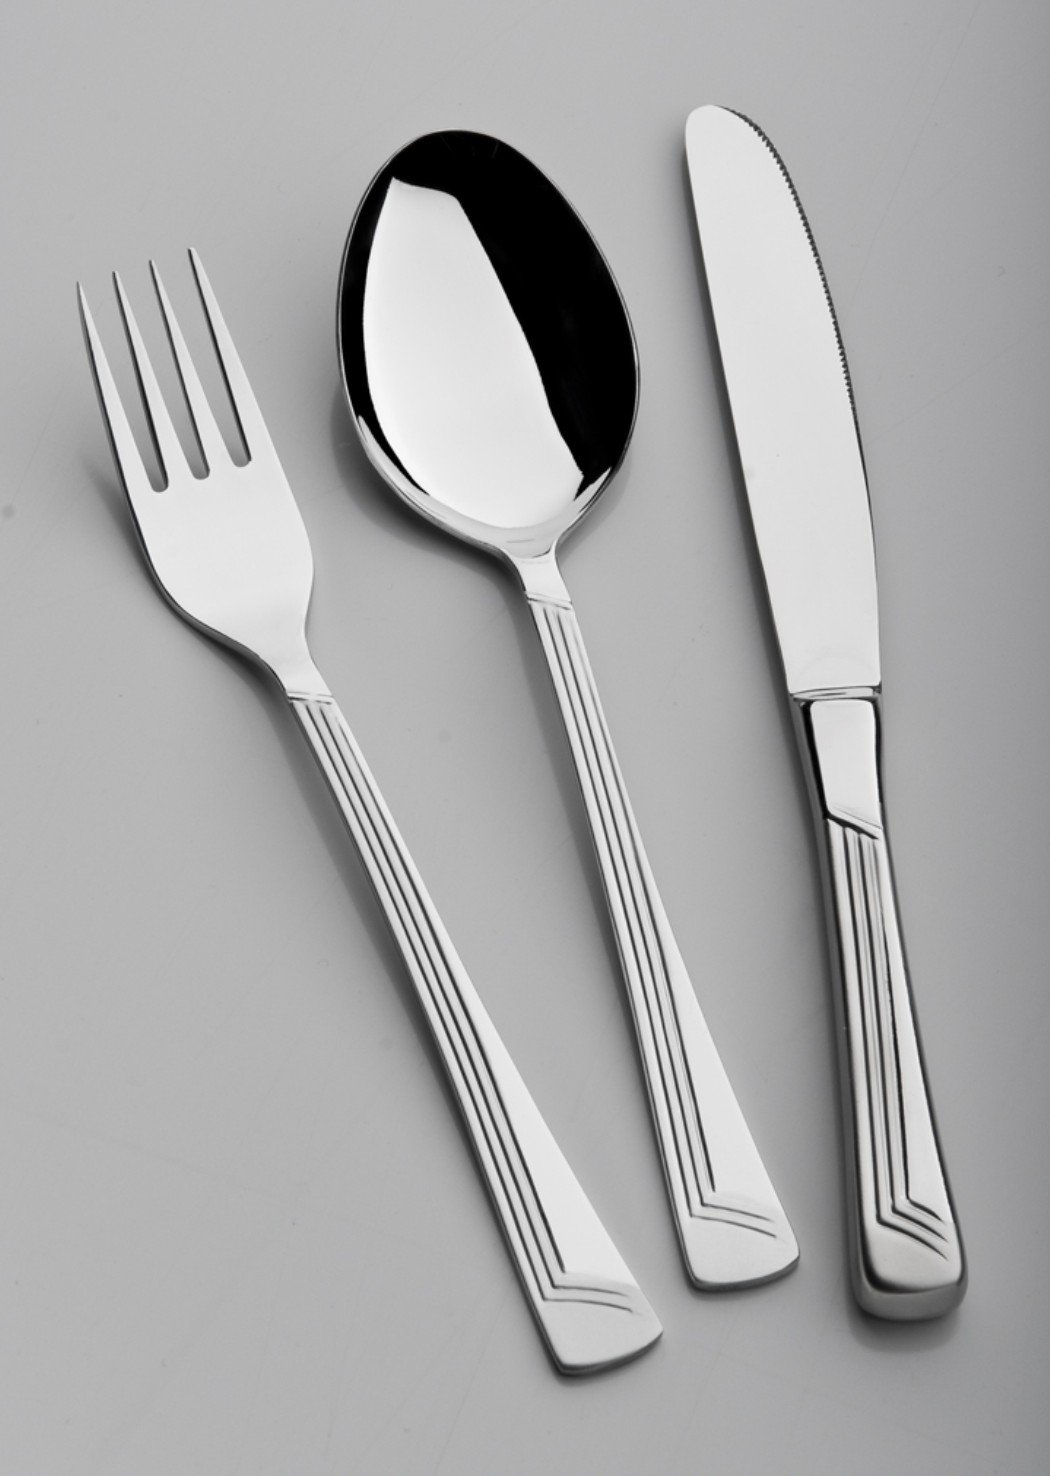 fork spoon knife, View stainless steel fork knife spoon, gazelle ...